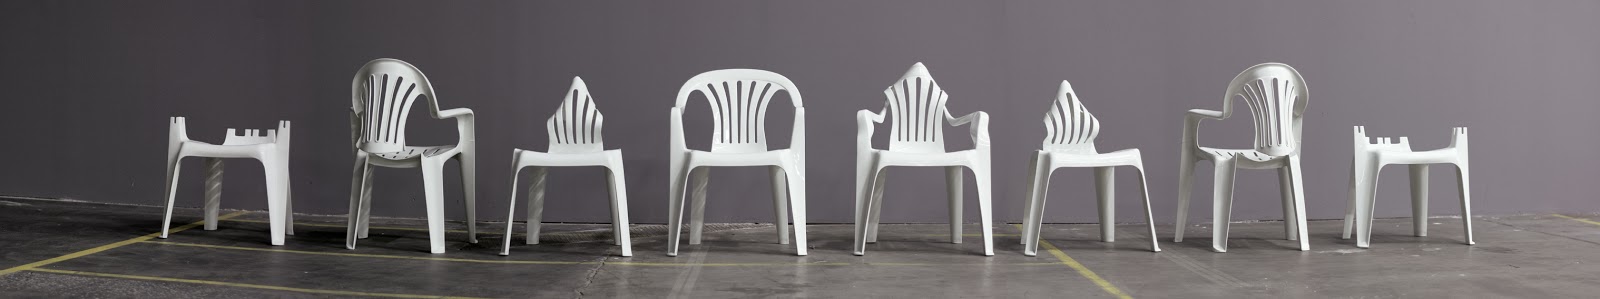 Bert Loeschner: Ο γητευτής της πλαστικής καρέκλας